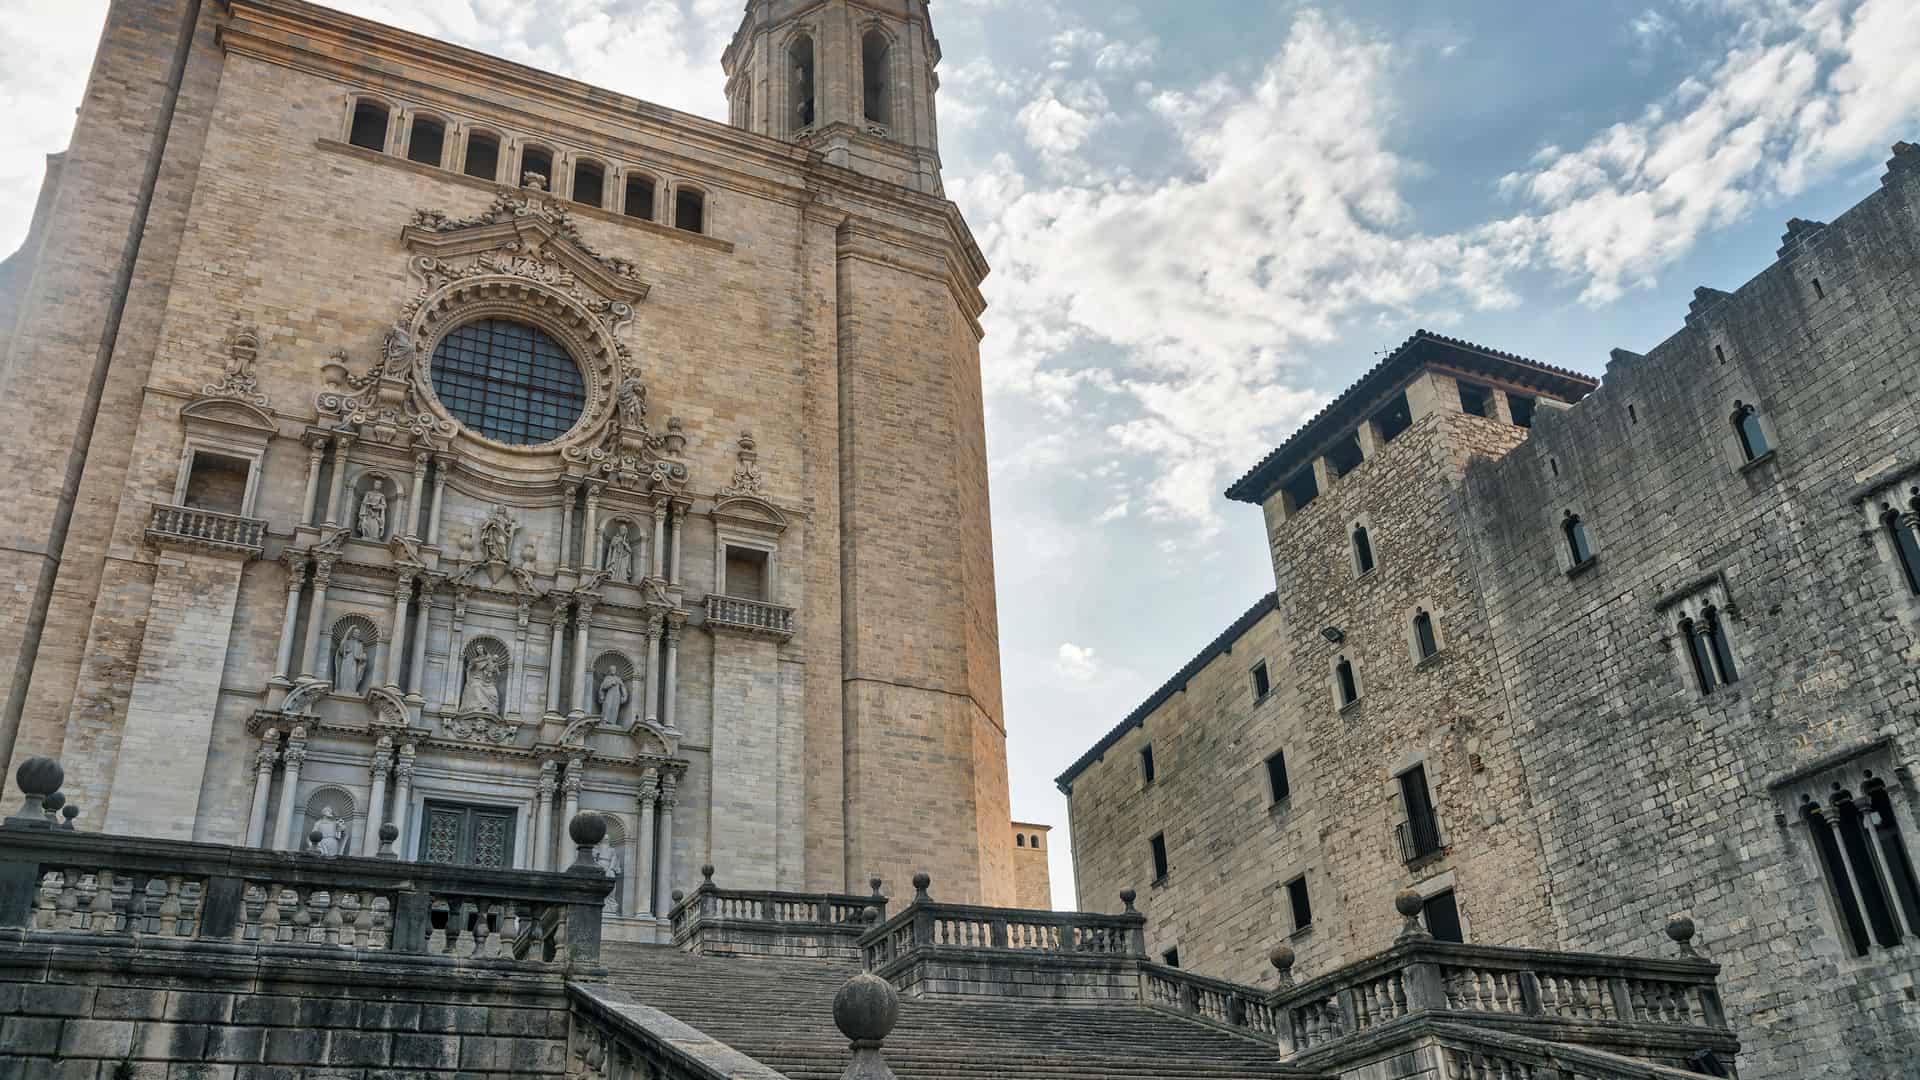 Girona catedral donde están disponibles los servicios telefónicos de yoigo